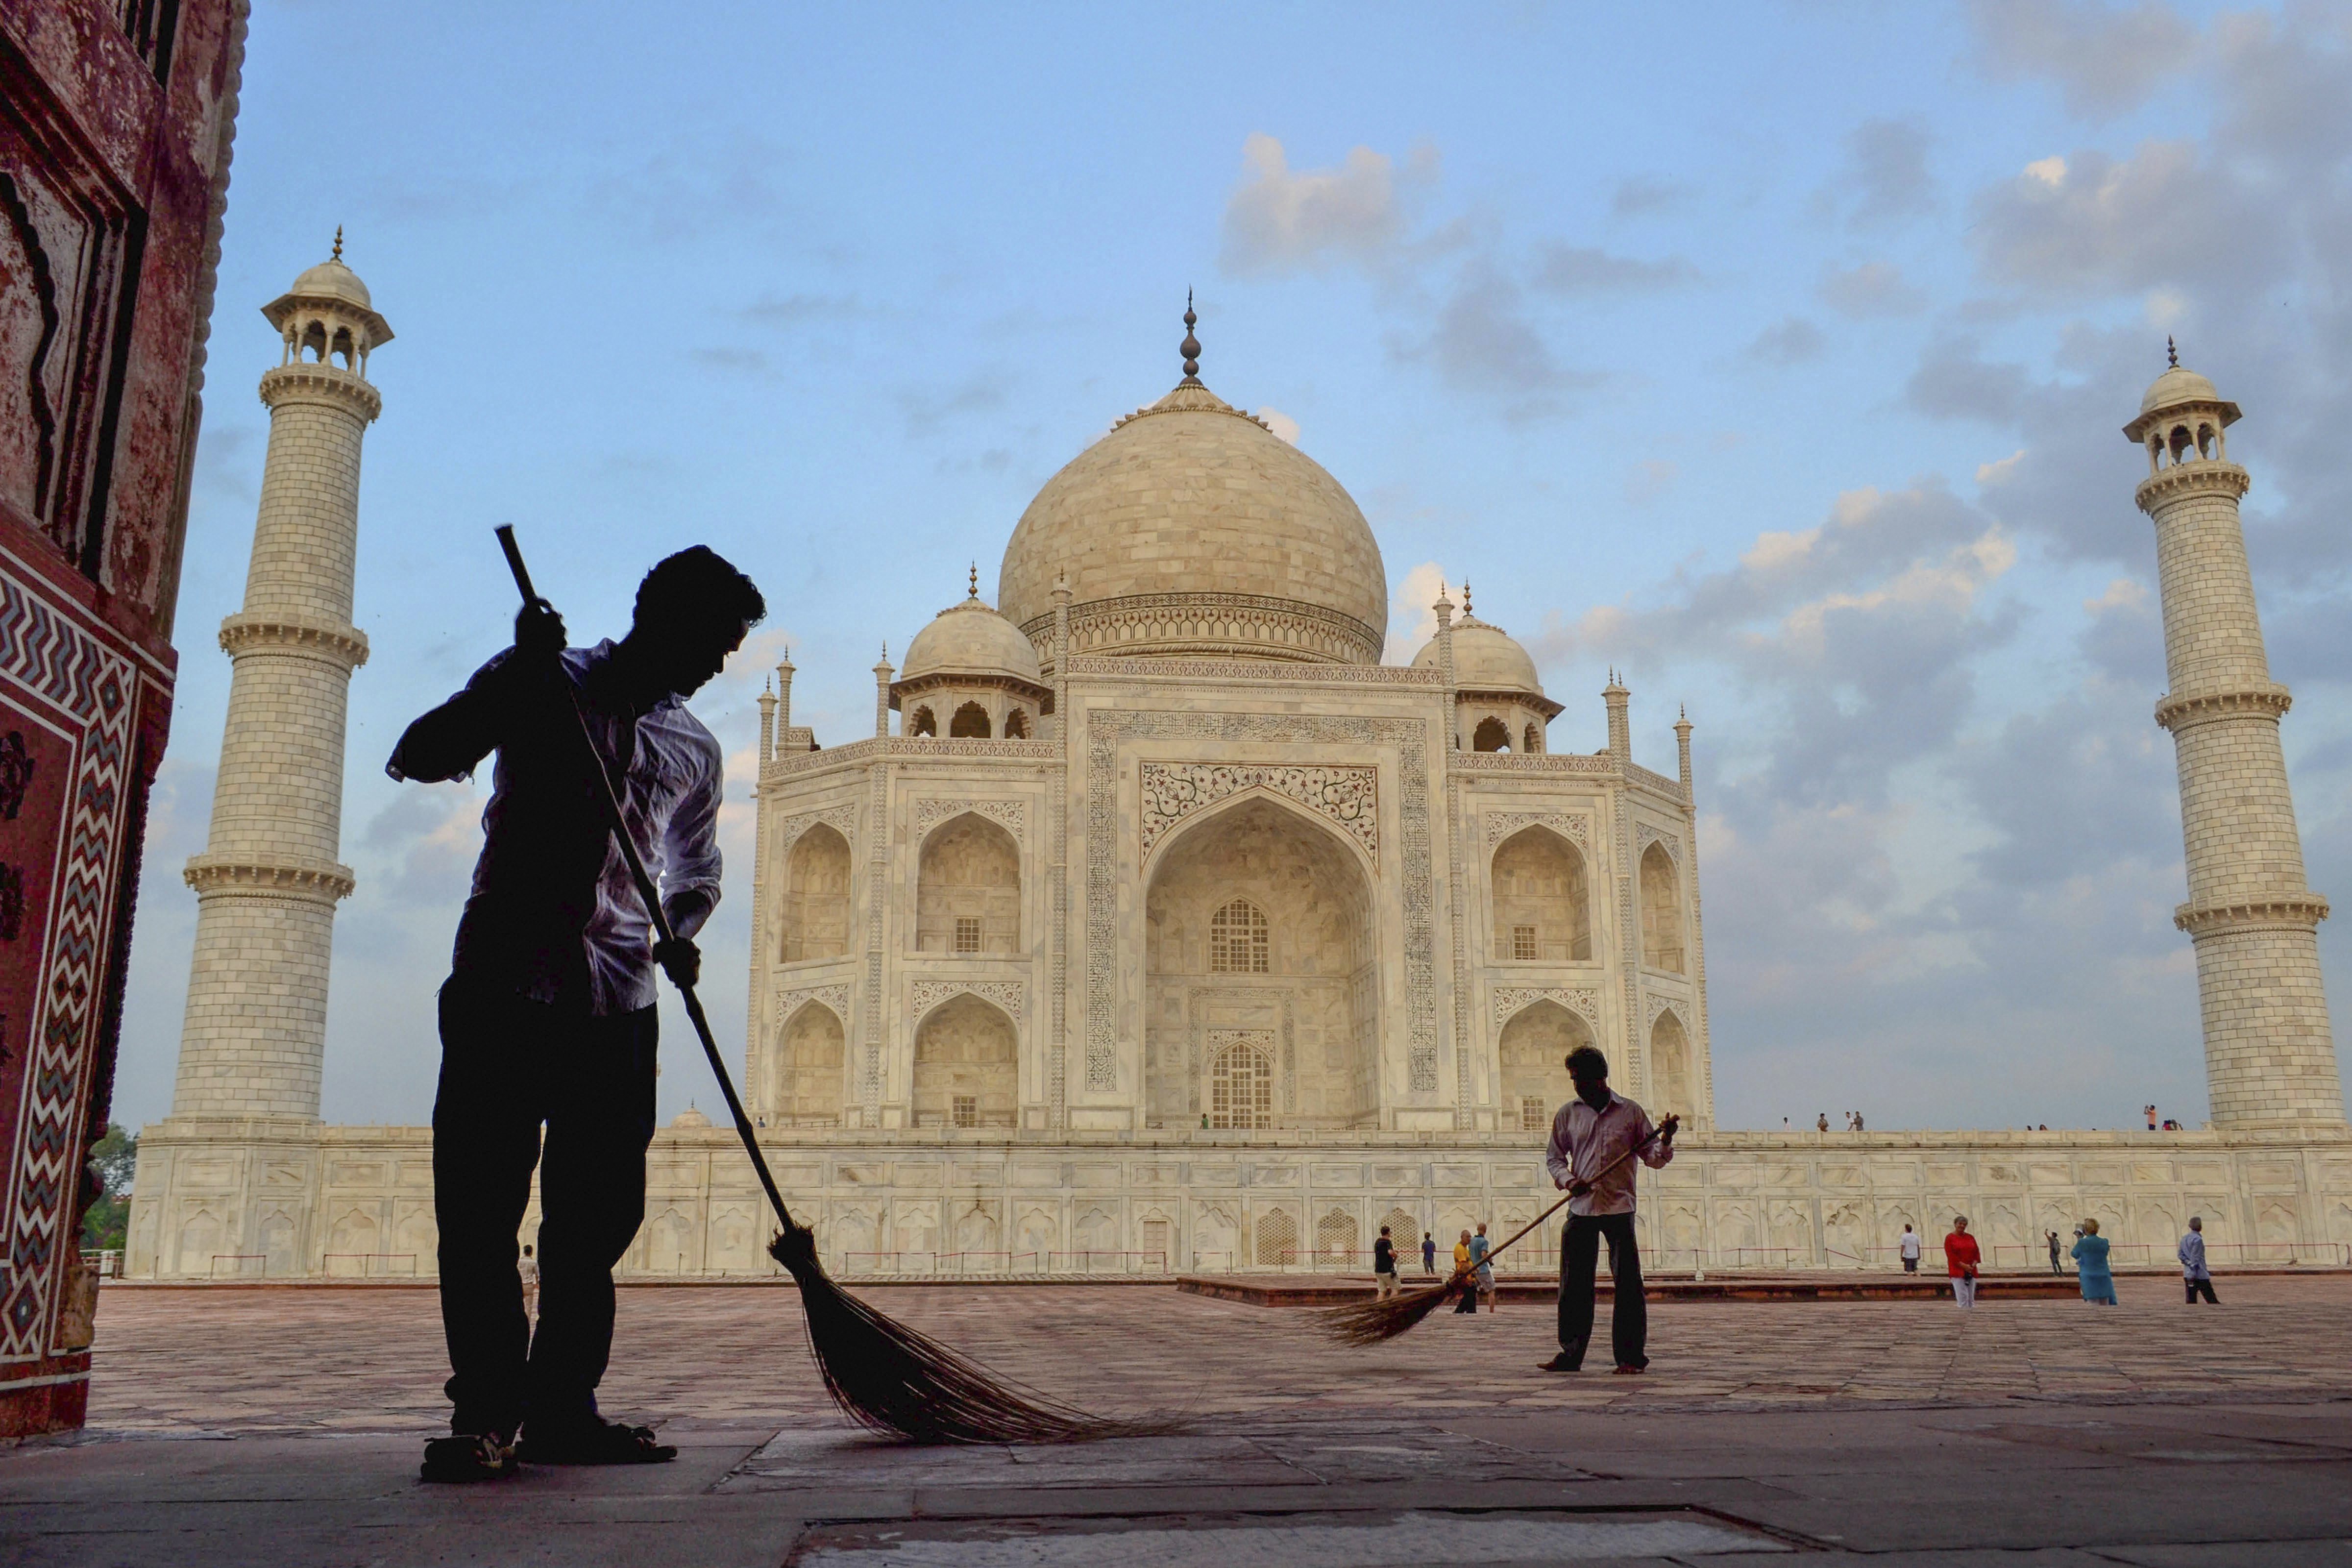 Workers sweep the premises of Taj Mahal under 'Swachhta hi Seva' campaign, in Agra - PTI